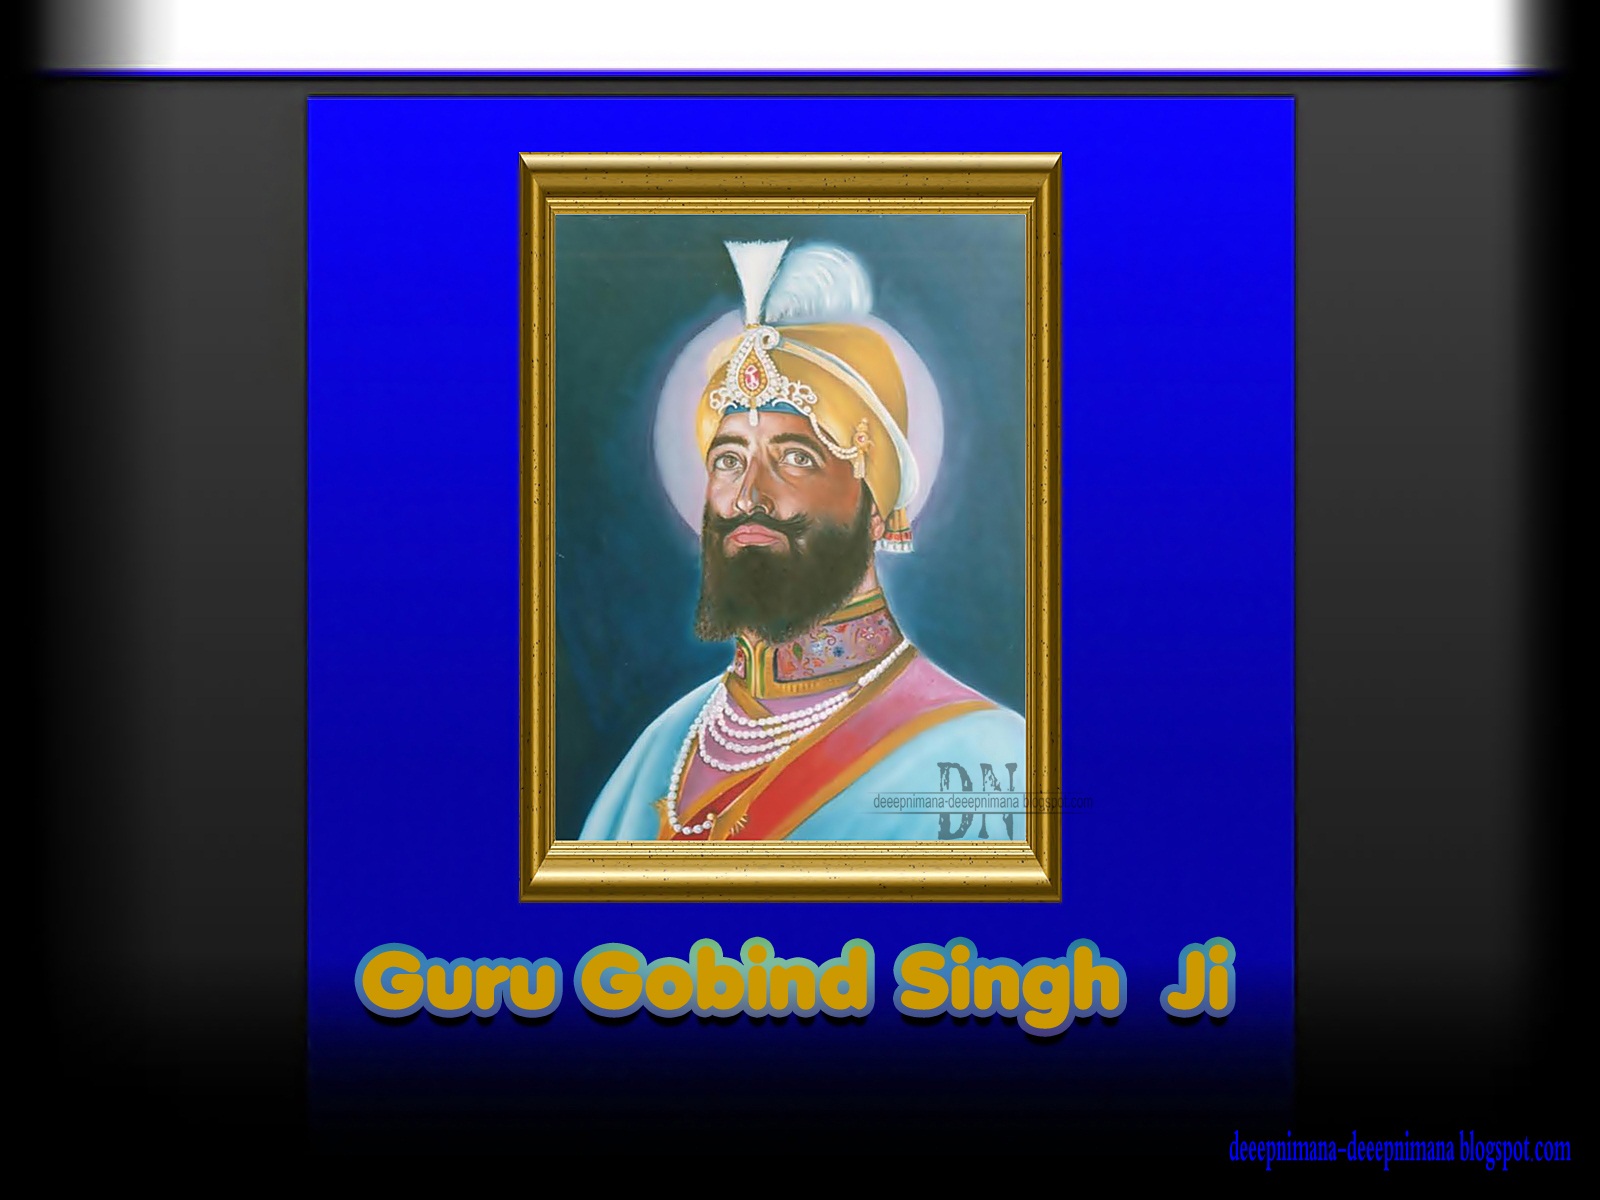 Deeepnimana Deeepnimana Guru Gobind Singh Ji